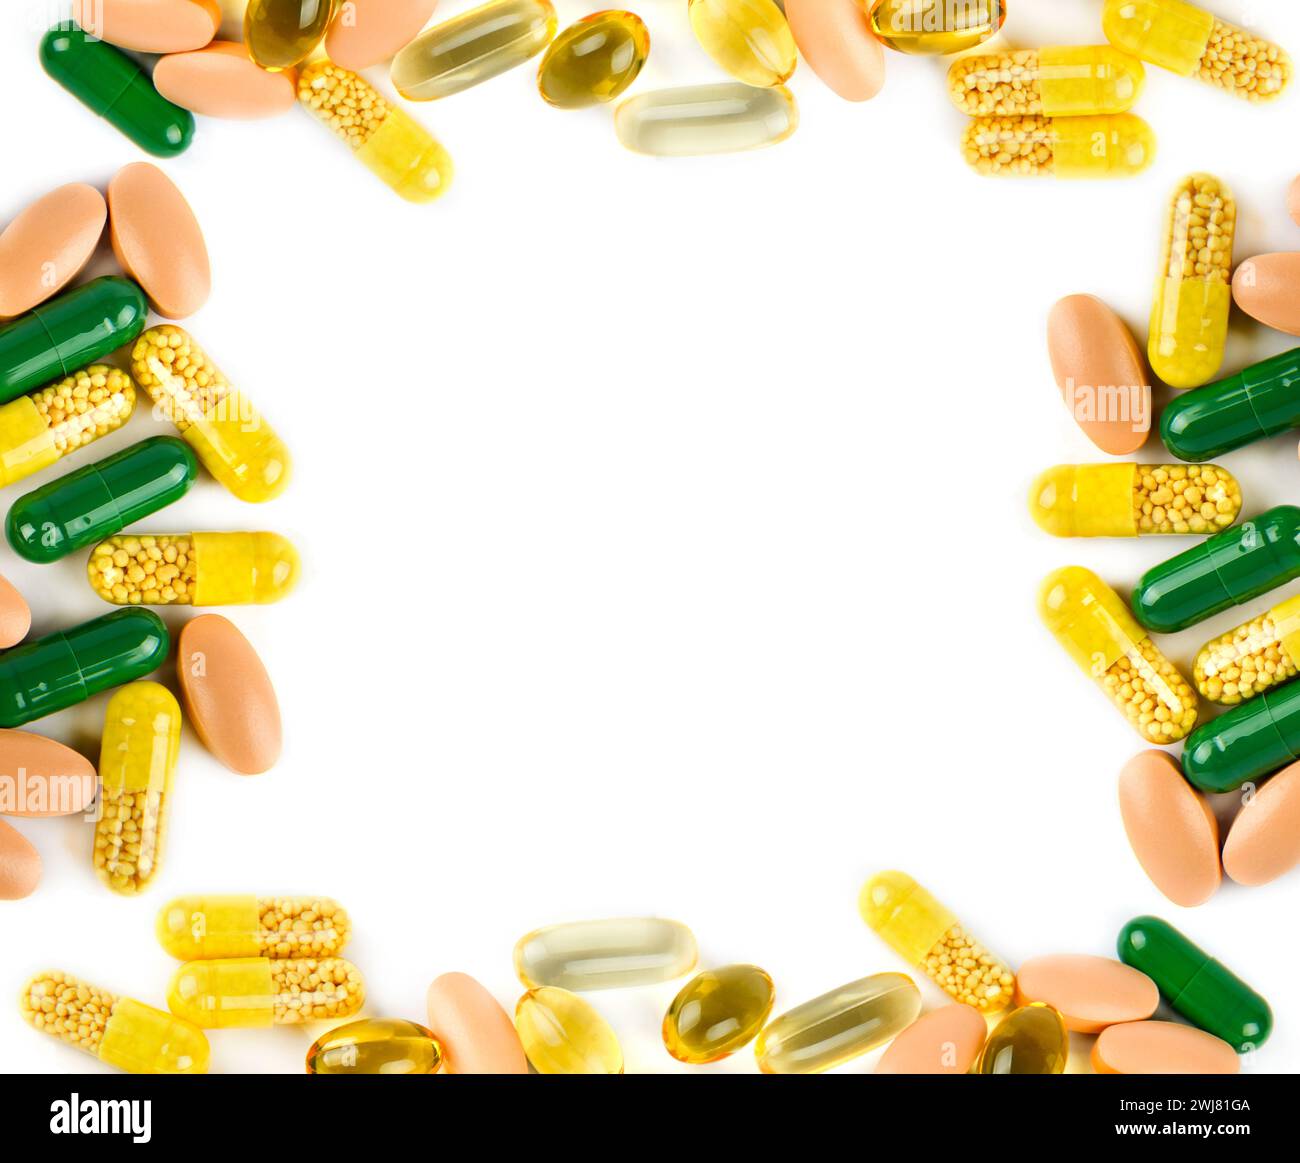 Arzneimittel, Tabletten und Kapseln, isoliert auf weißem Hintergrund. Collage. Es ist freier Platz für Text vorhanden. Stockfoto